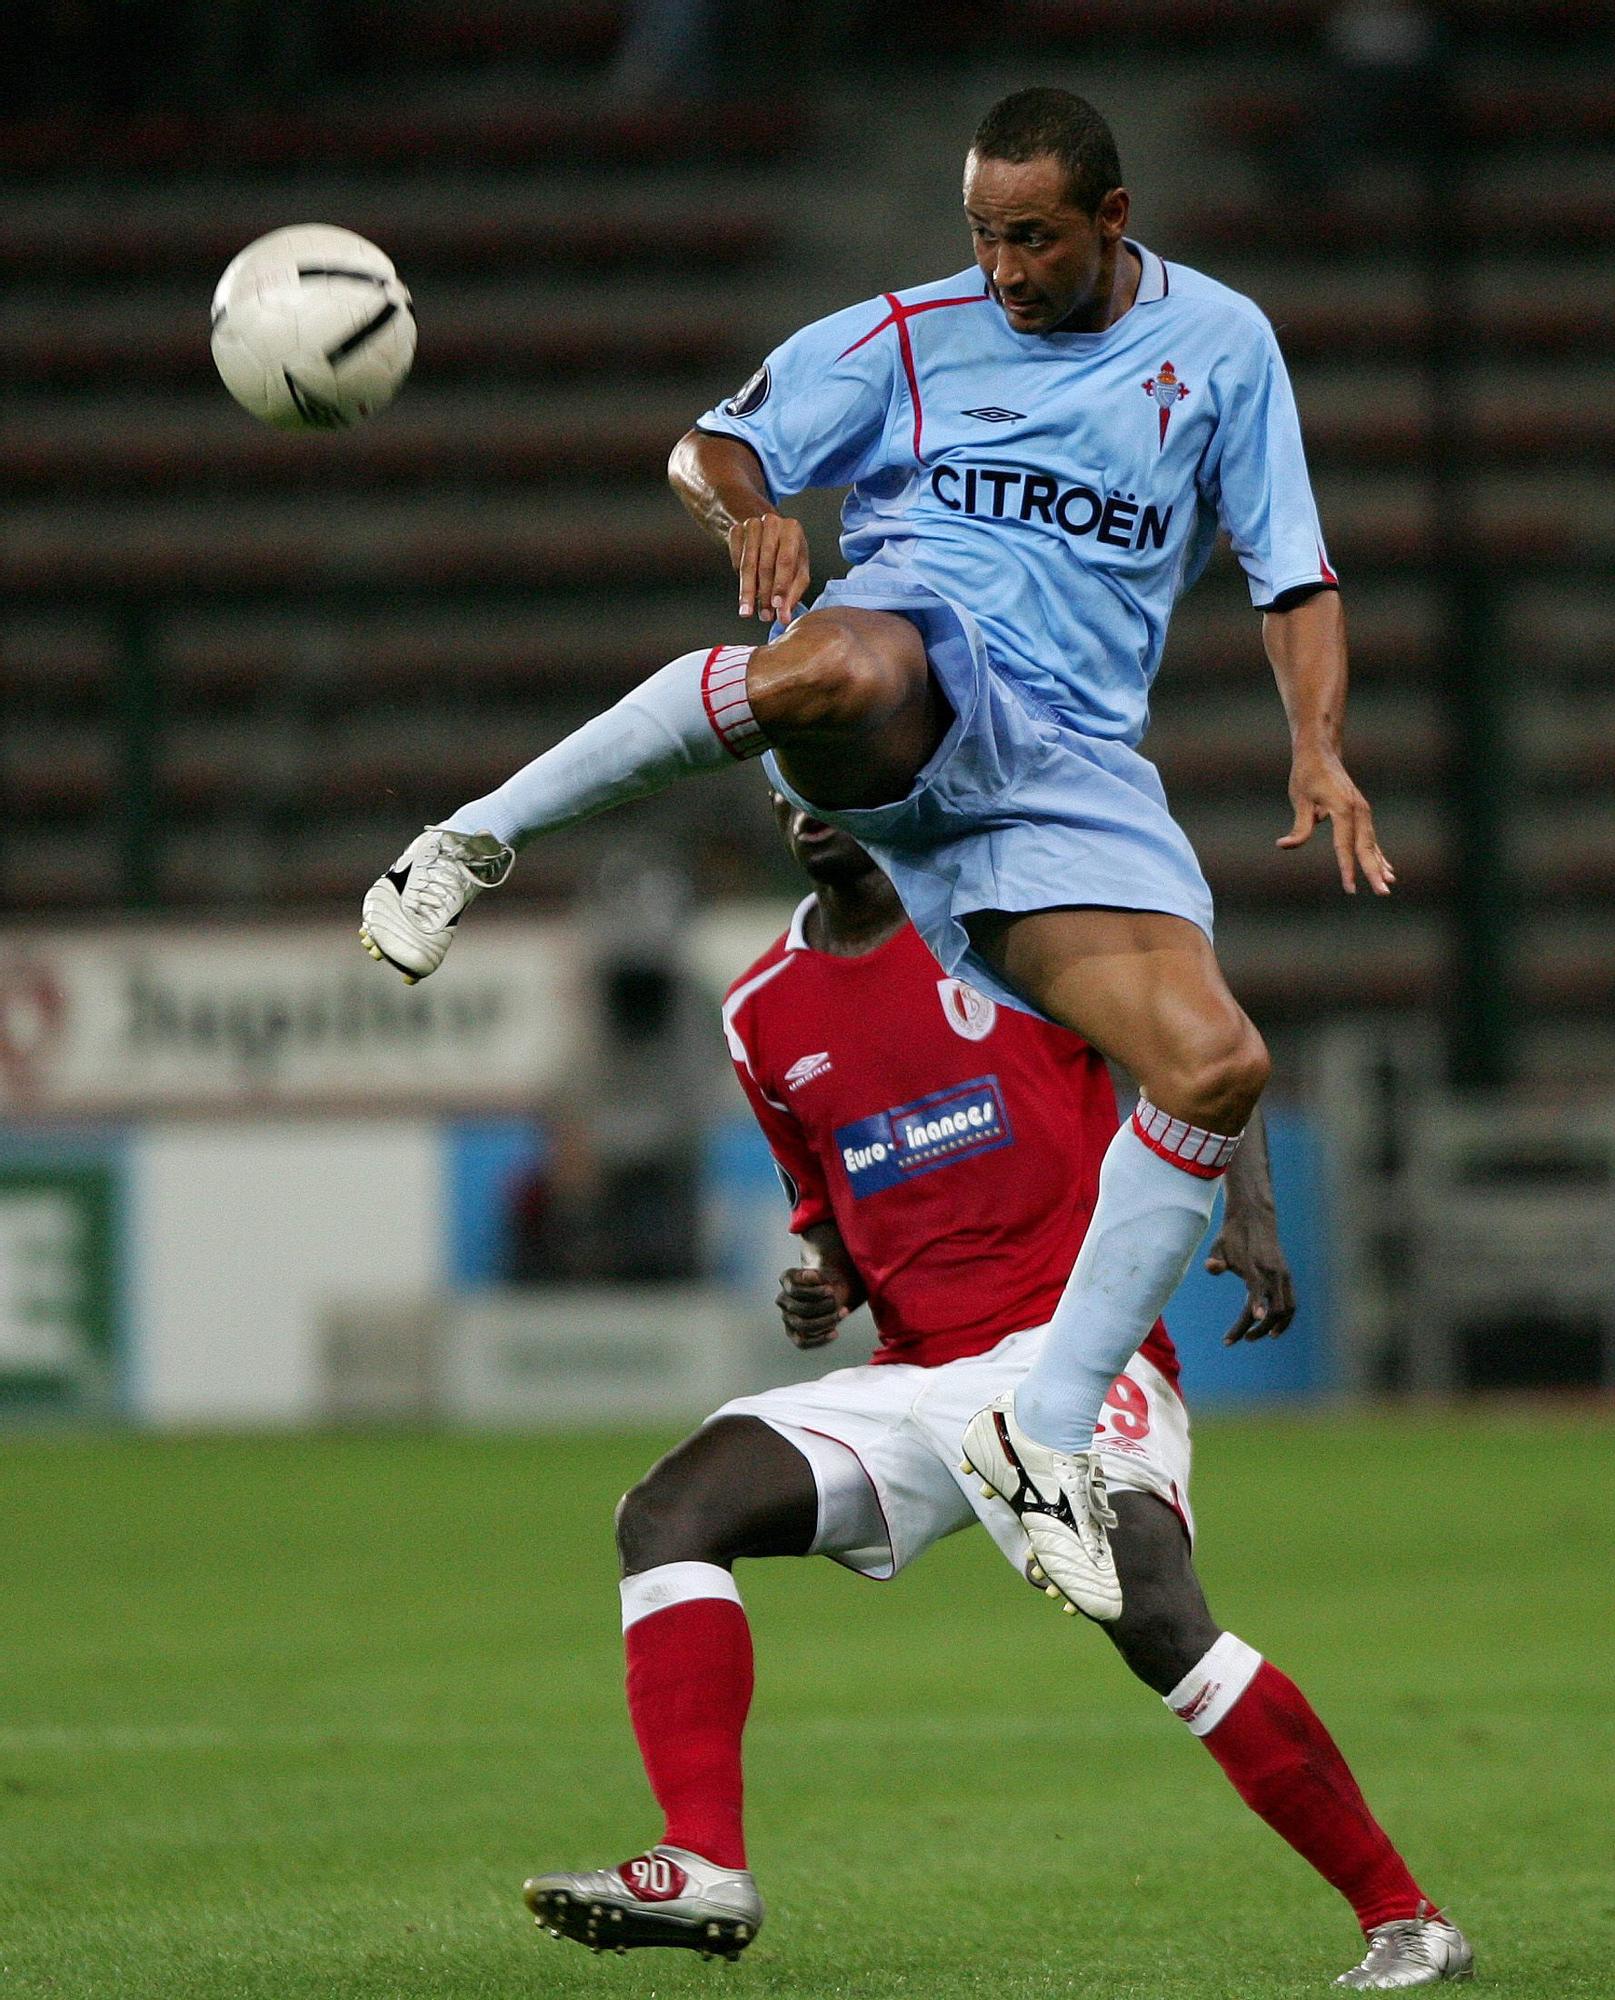 BAIANO 15-9-06 Thierry Roge En su debut en UEFA anotar�a dos goles ante el Standard en Bala�dos.jpg